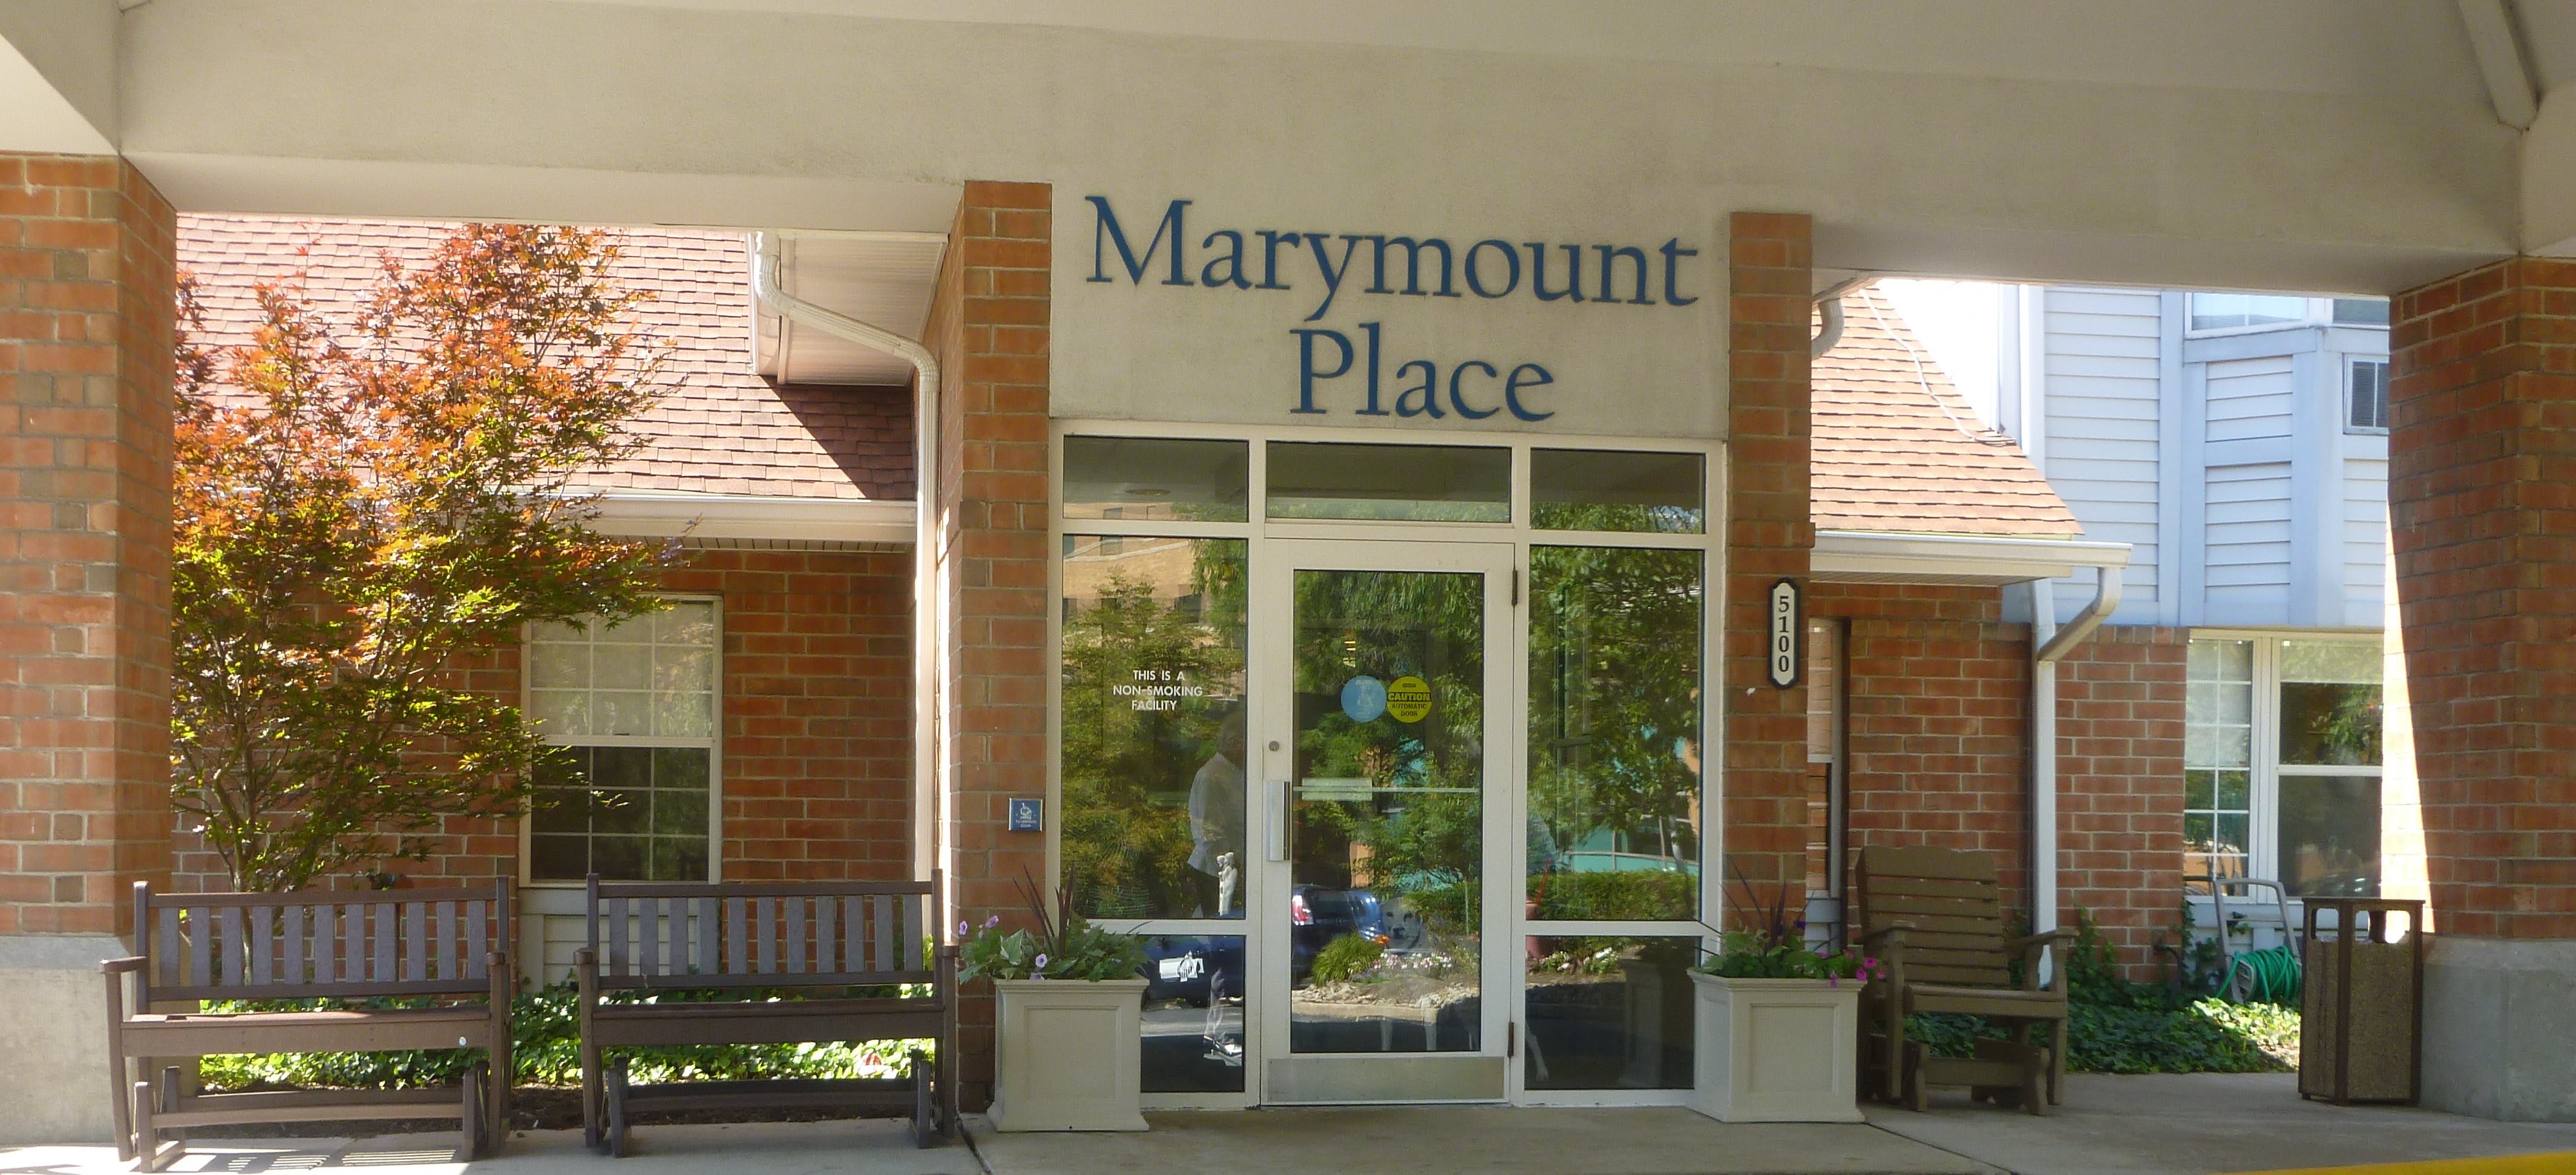 Marymount Place